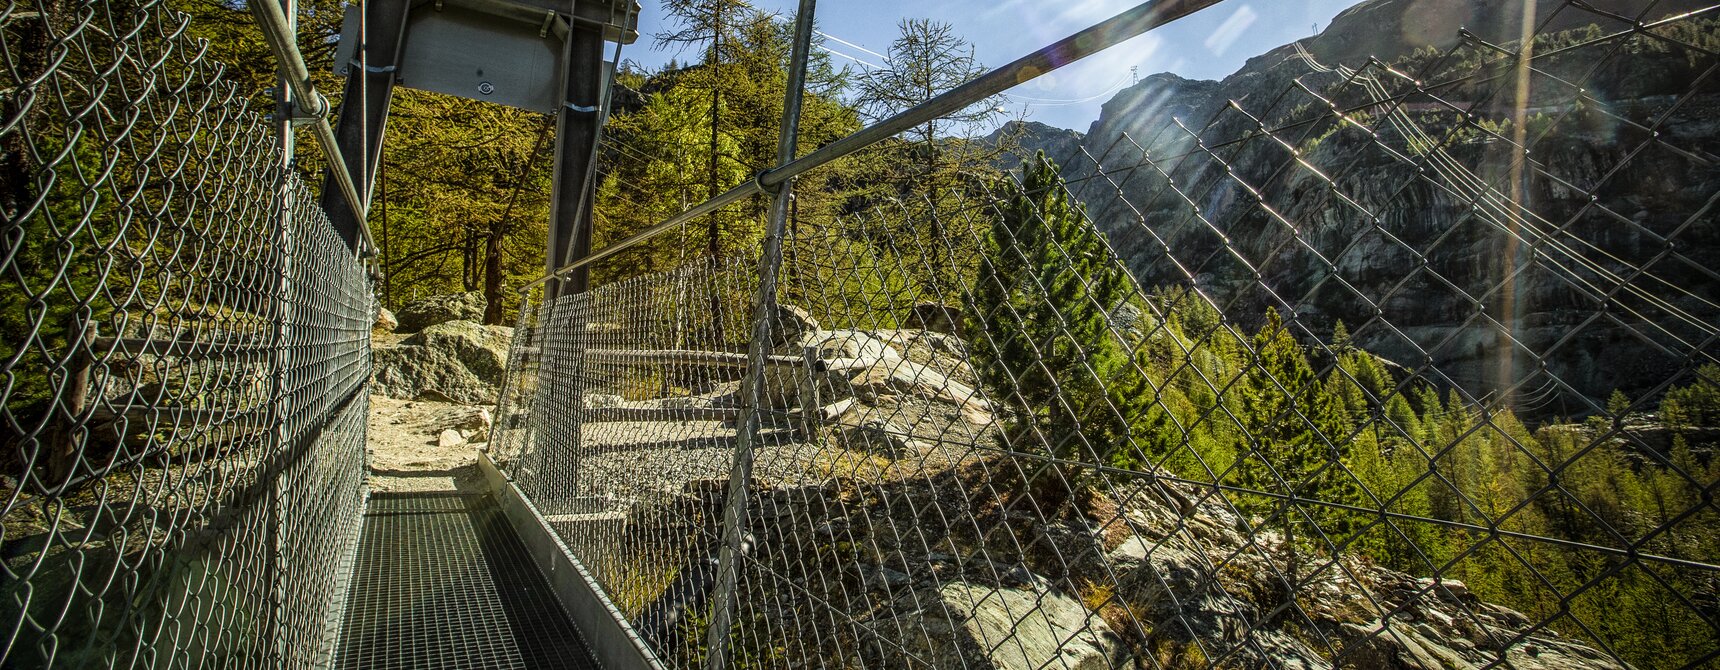 Hängebrücke Furi mit Blick auf die "Dossen". Im HIntergrund thronen Felsen und Lärchen | © Andrea Soltemann